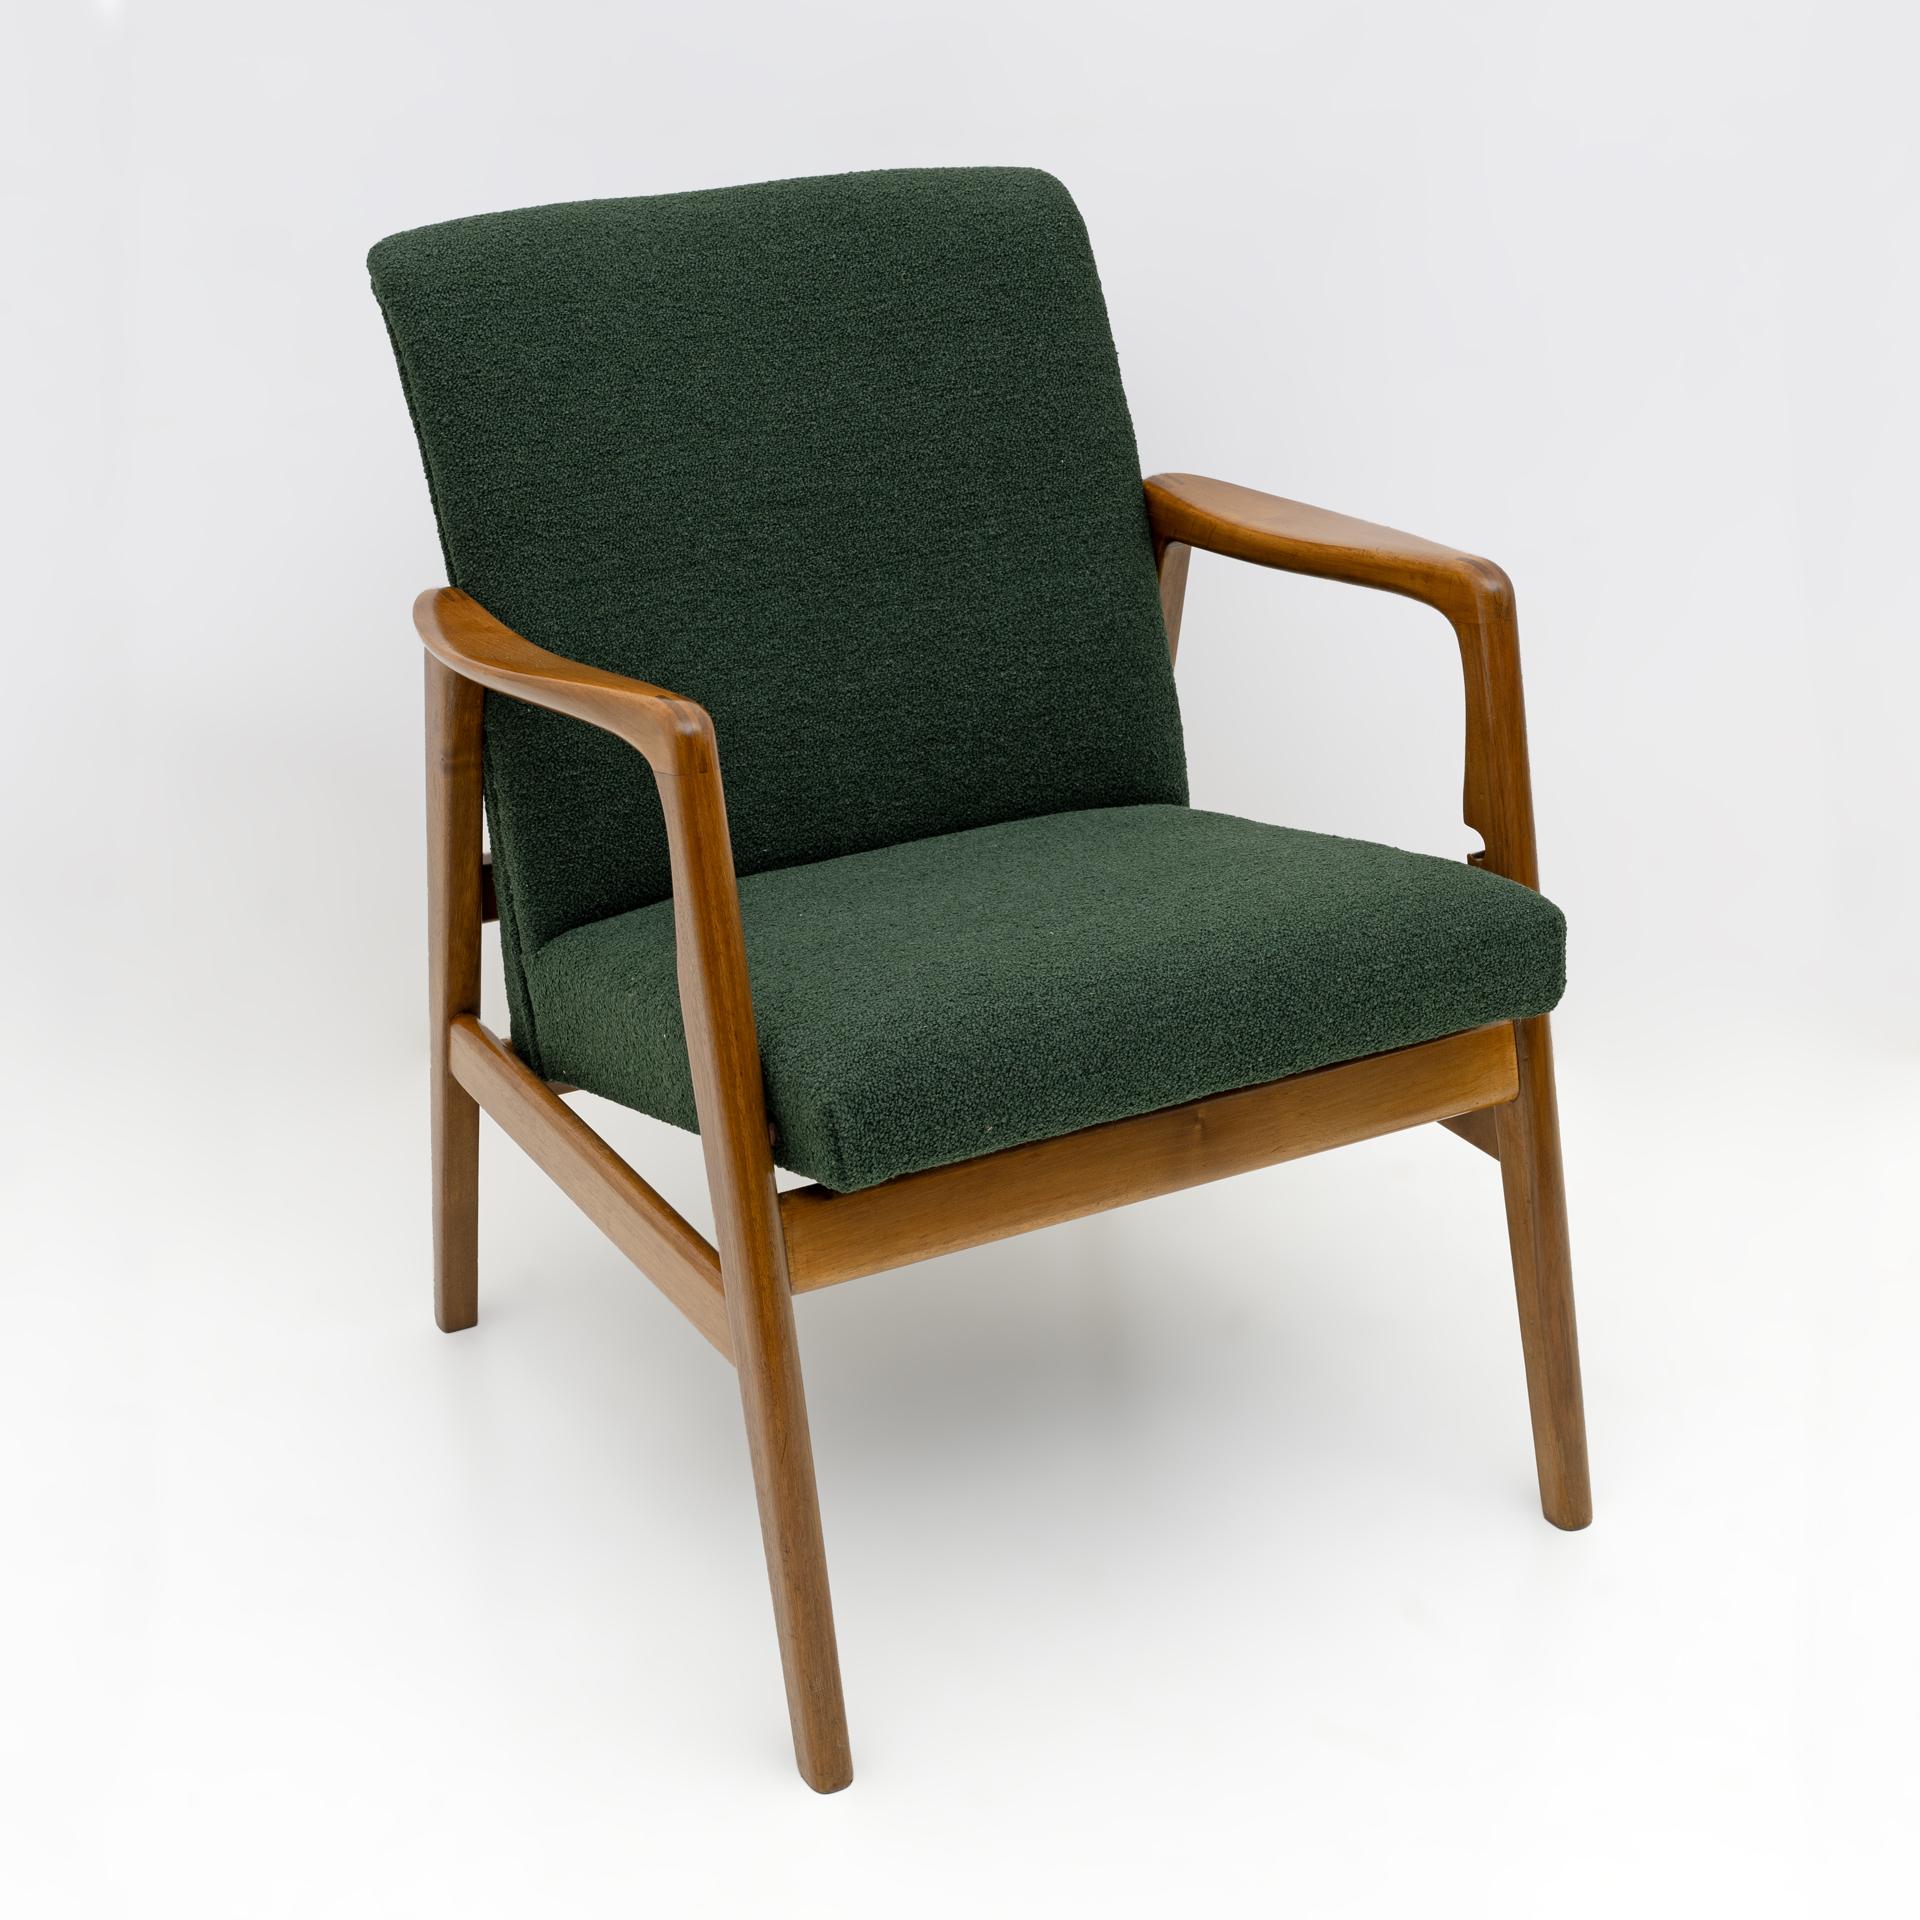 Gio Ponti Sessel für Figli von Amedeo Cassina
Etikett für die Herstellung. Entworfen für das Hotel Parco dei Principi in Sorrent, 1950er Jahre.
Der Sessel verfügt über zwei bequeme Positionen dank einer einfachen, handgefertigten Bewegung, um